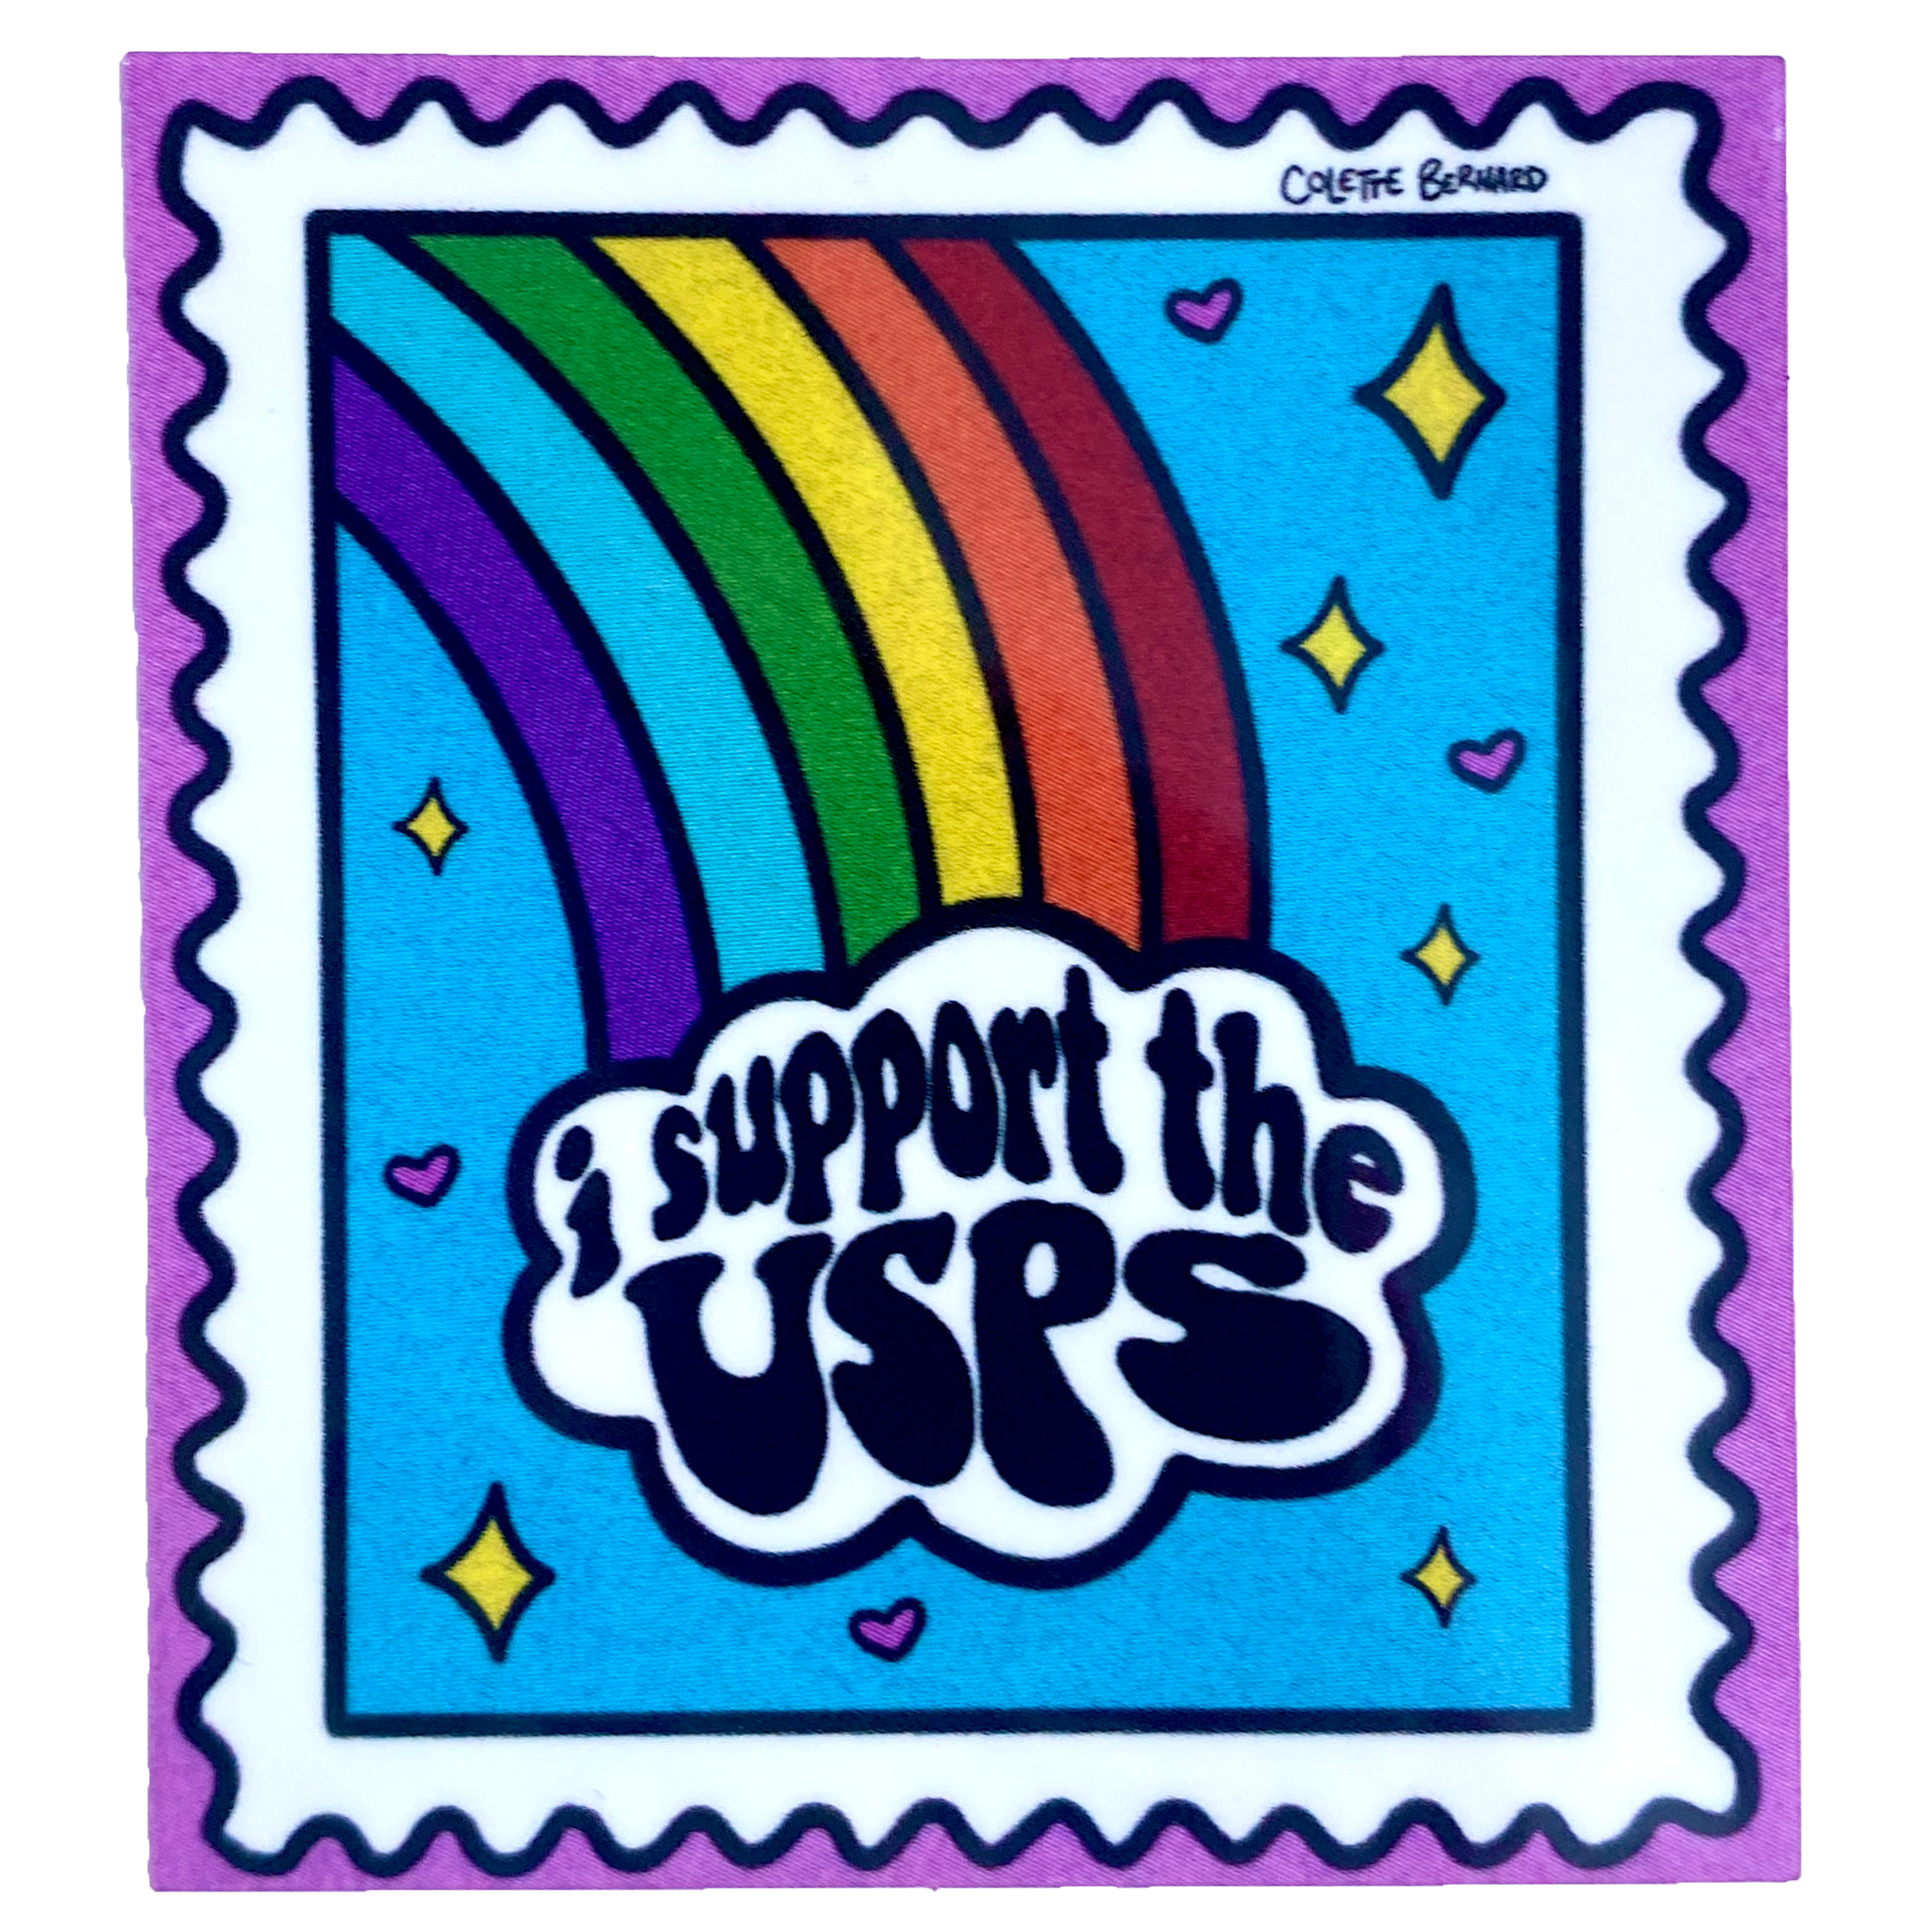 USPS Stamp Sticker